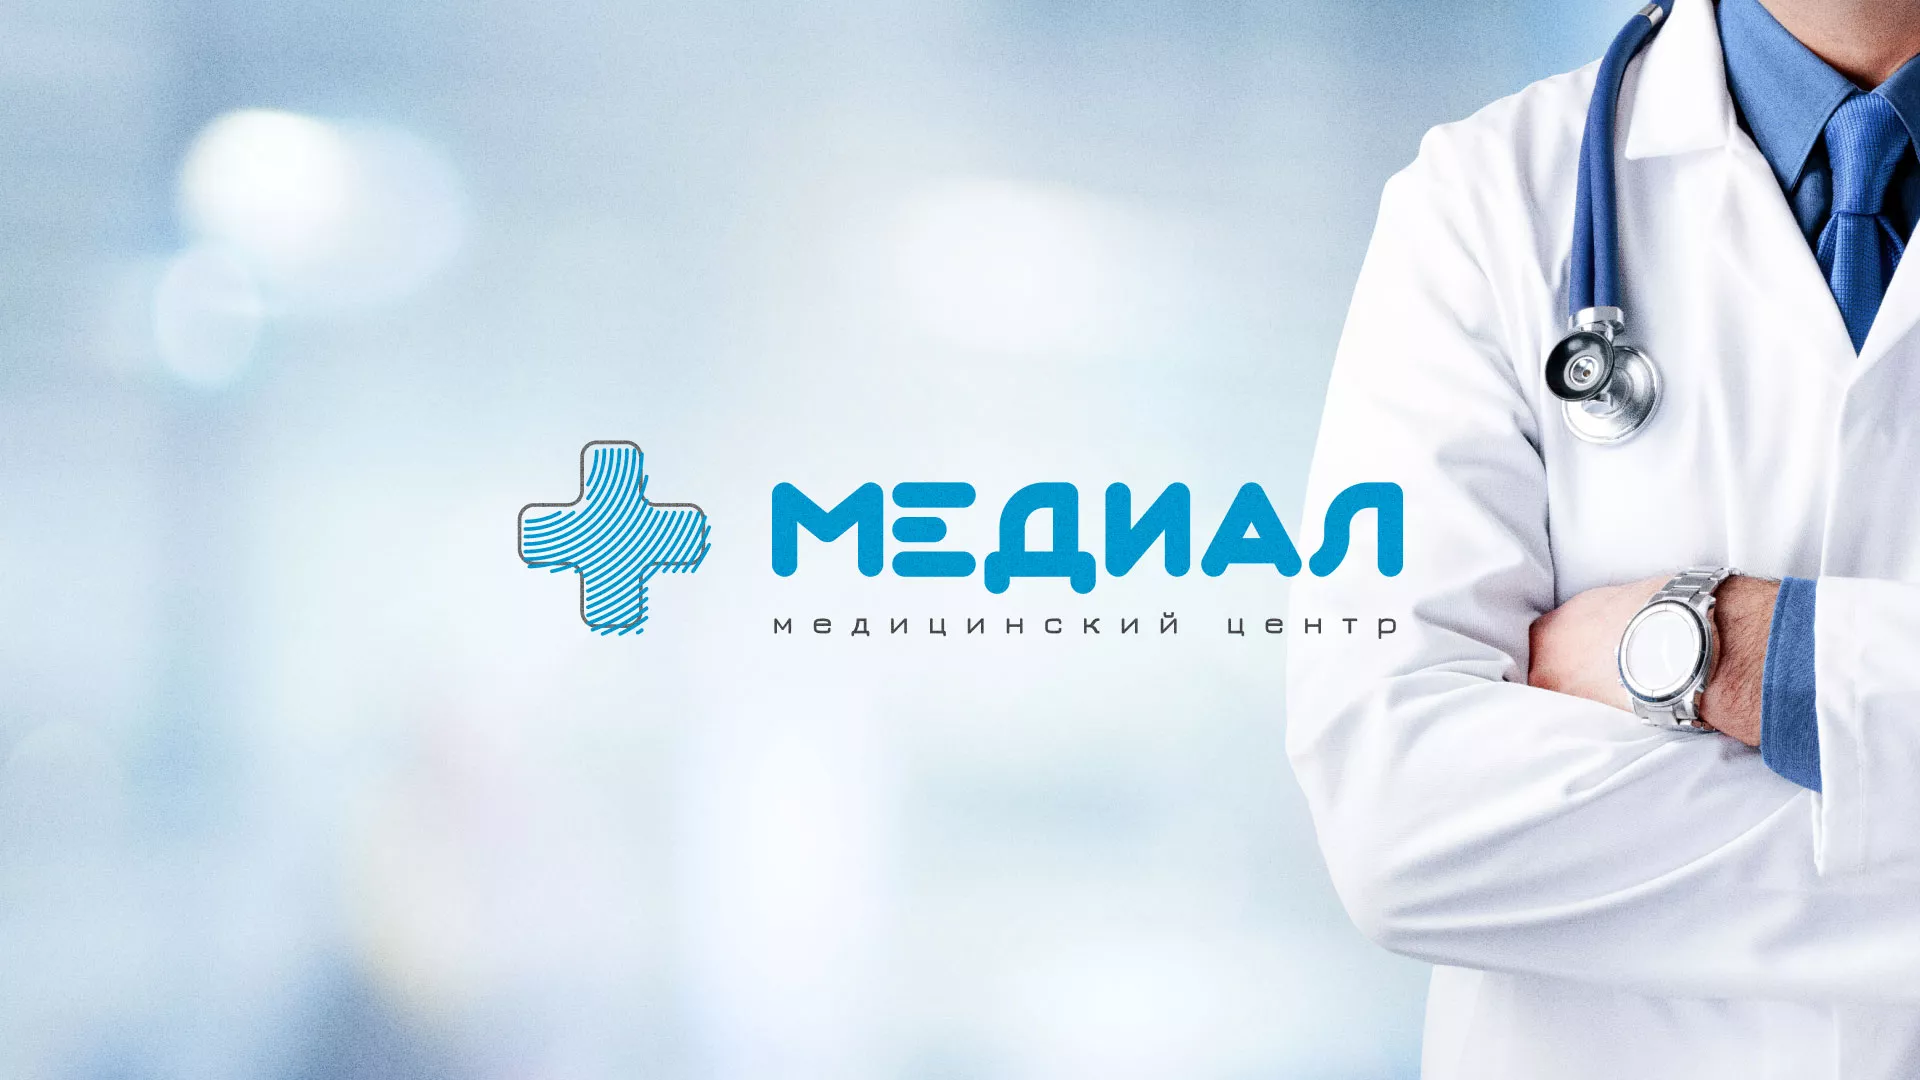 Создание сайта для медицинского центра «Медиал» в Лосино-Петровске